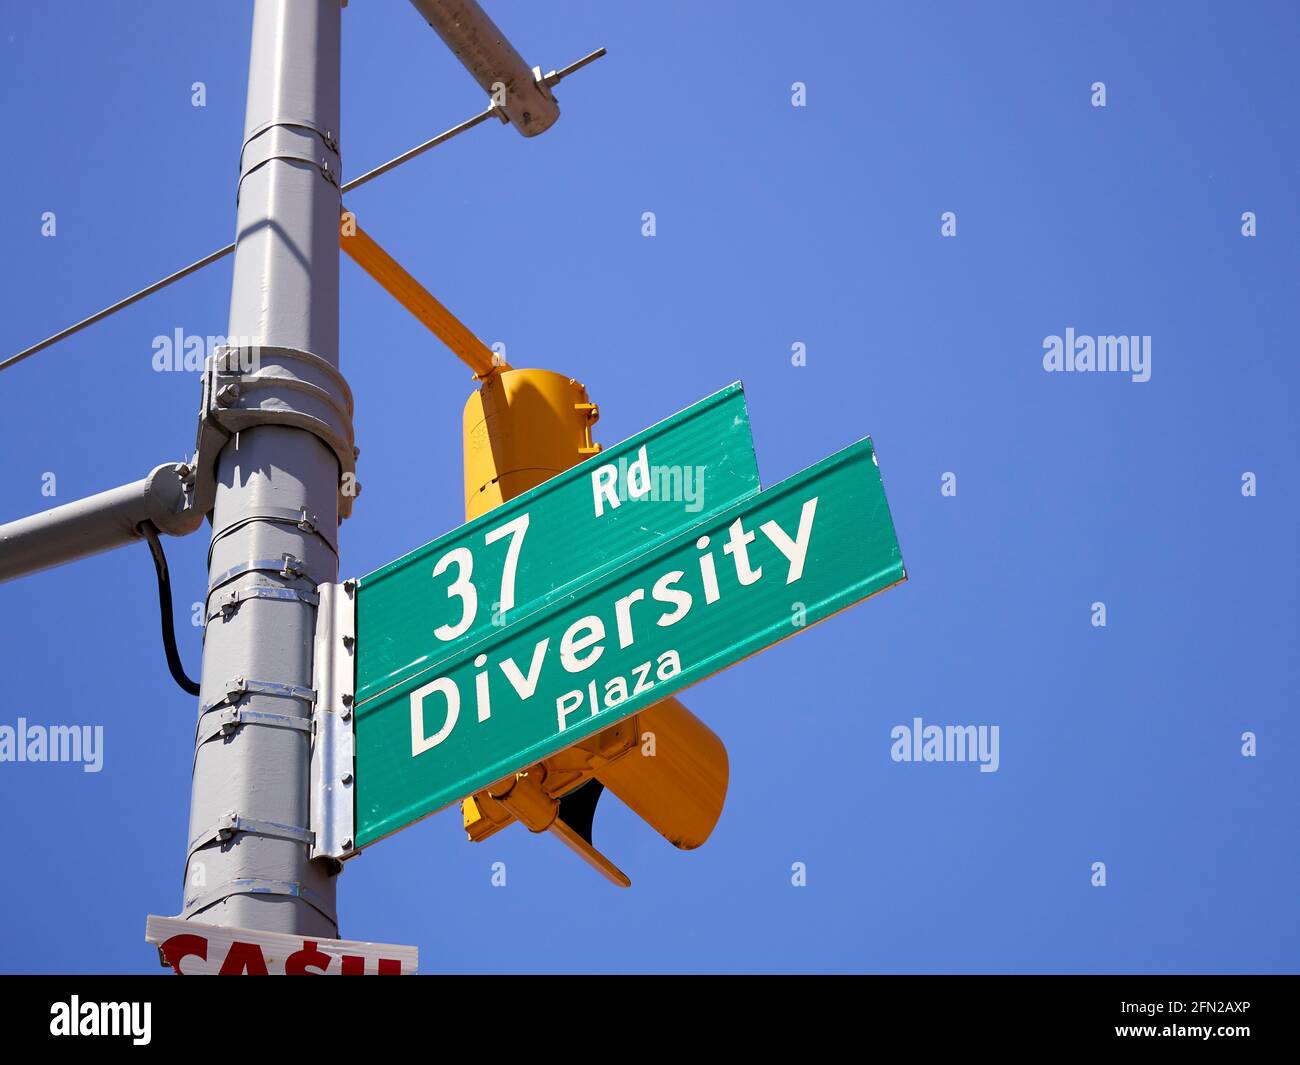 Panneau de rue Diversity Plaza, Jackson Heights, Queens, New York, États-Unis Banque D'Images